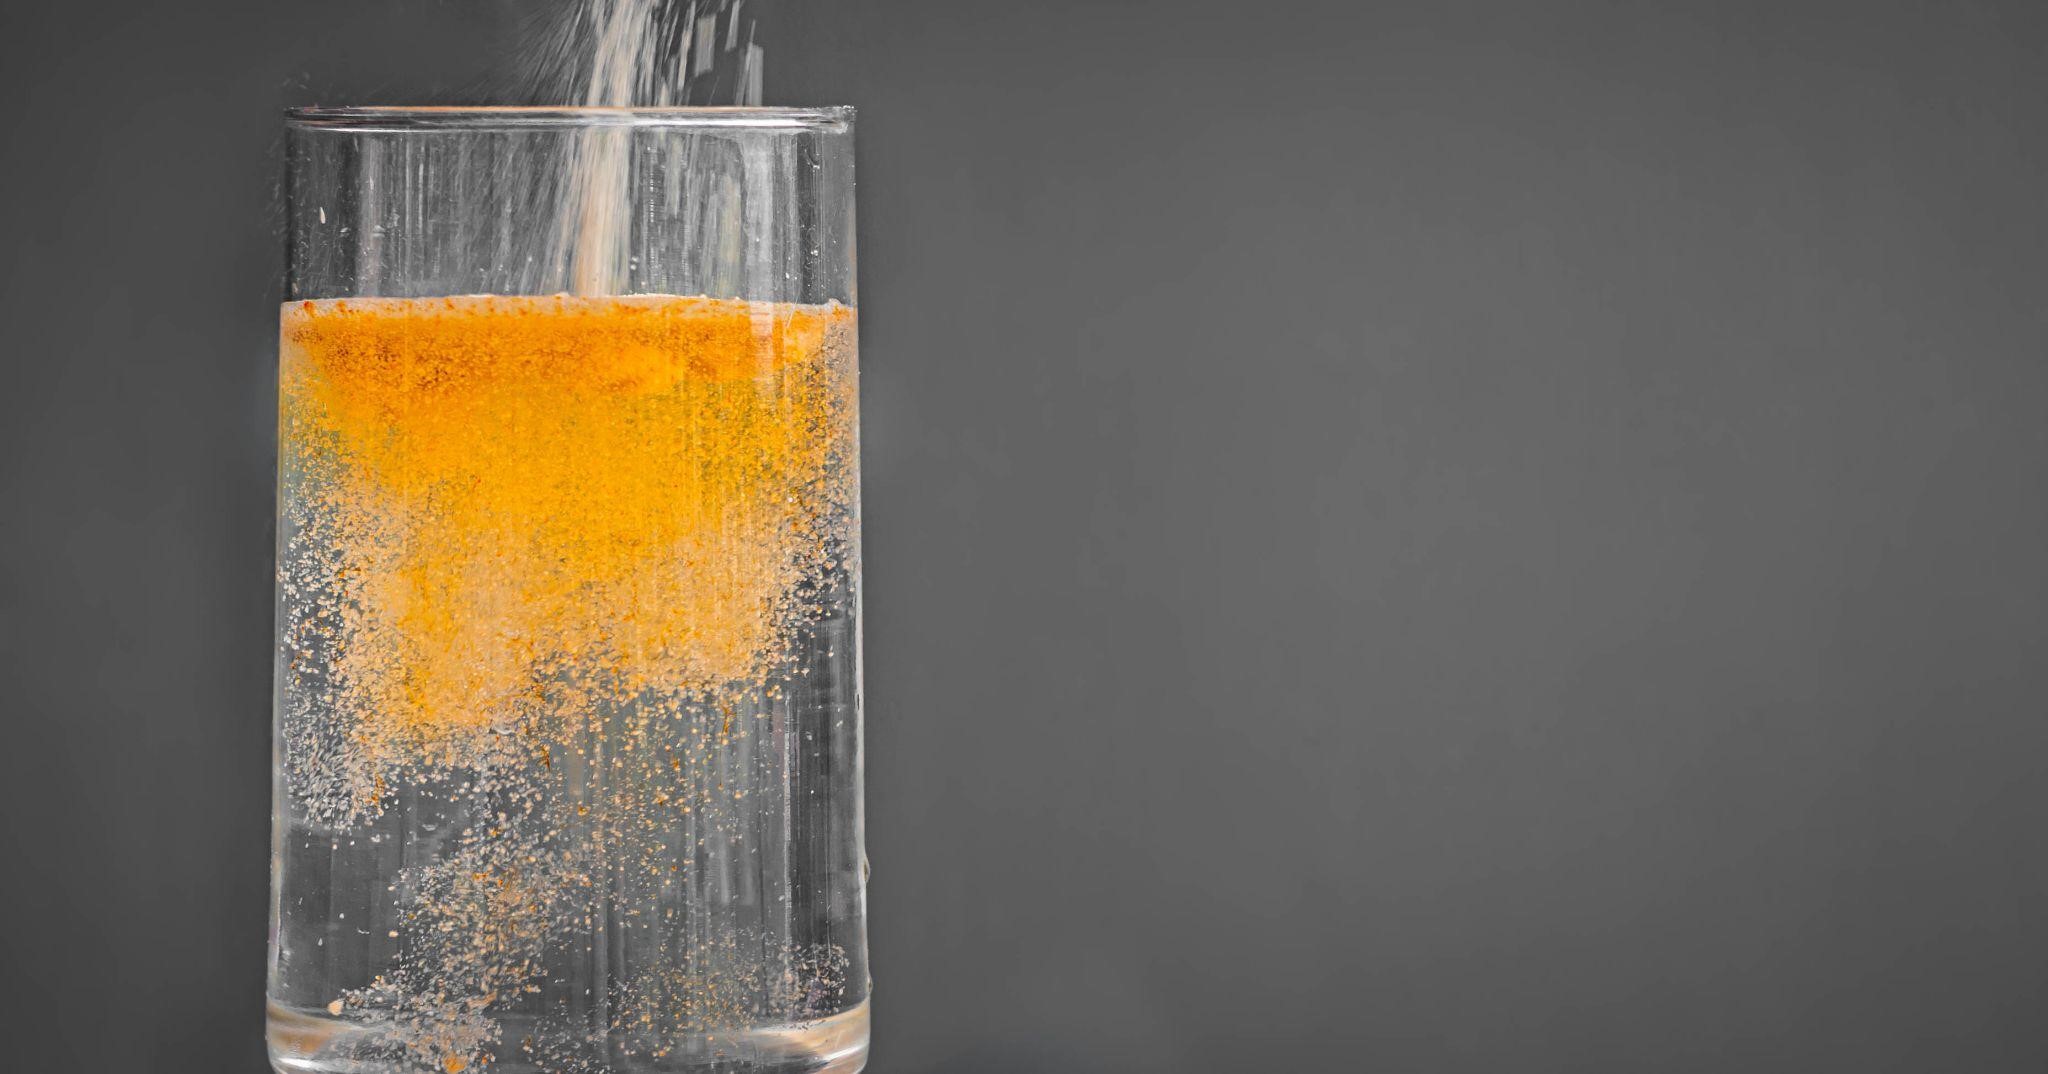 Electrolyte Drinks vs. Plain Water